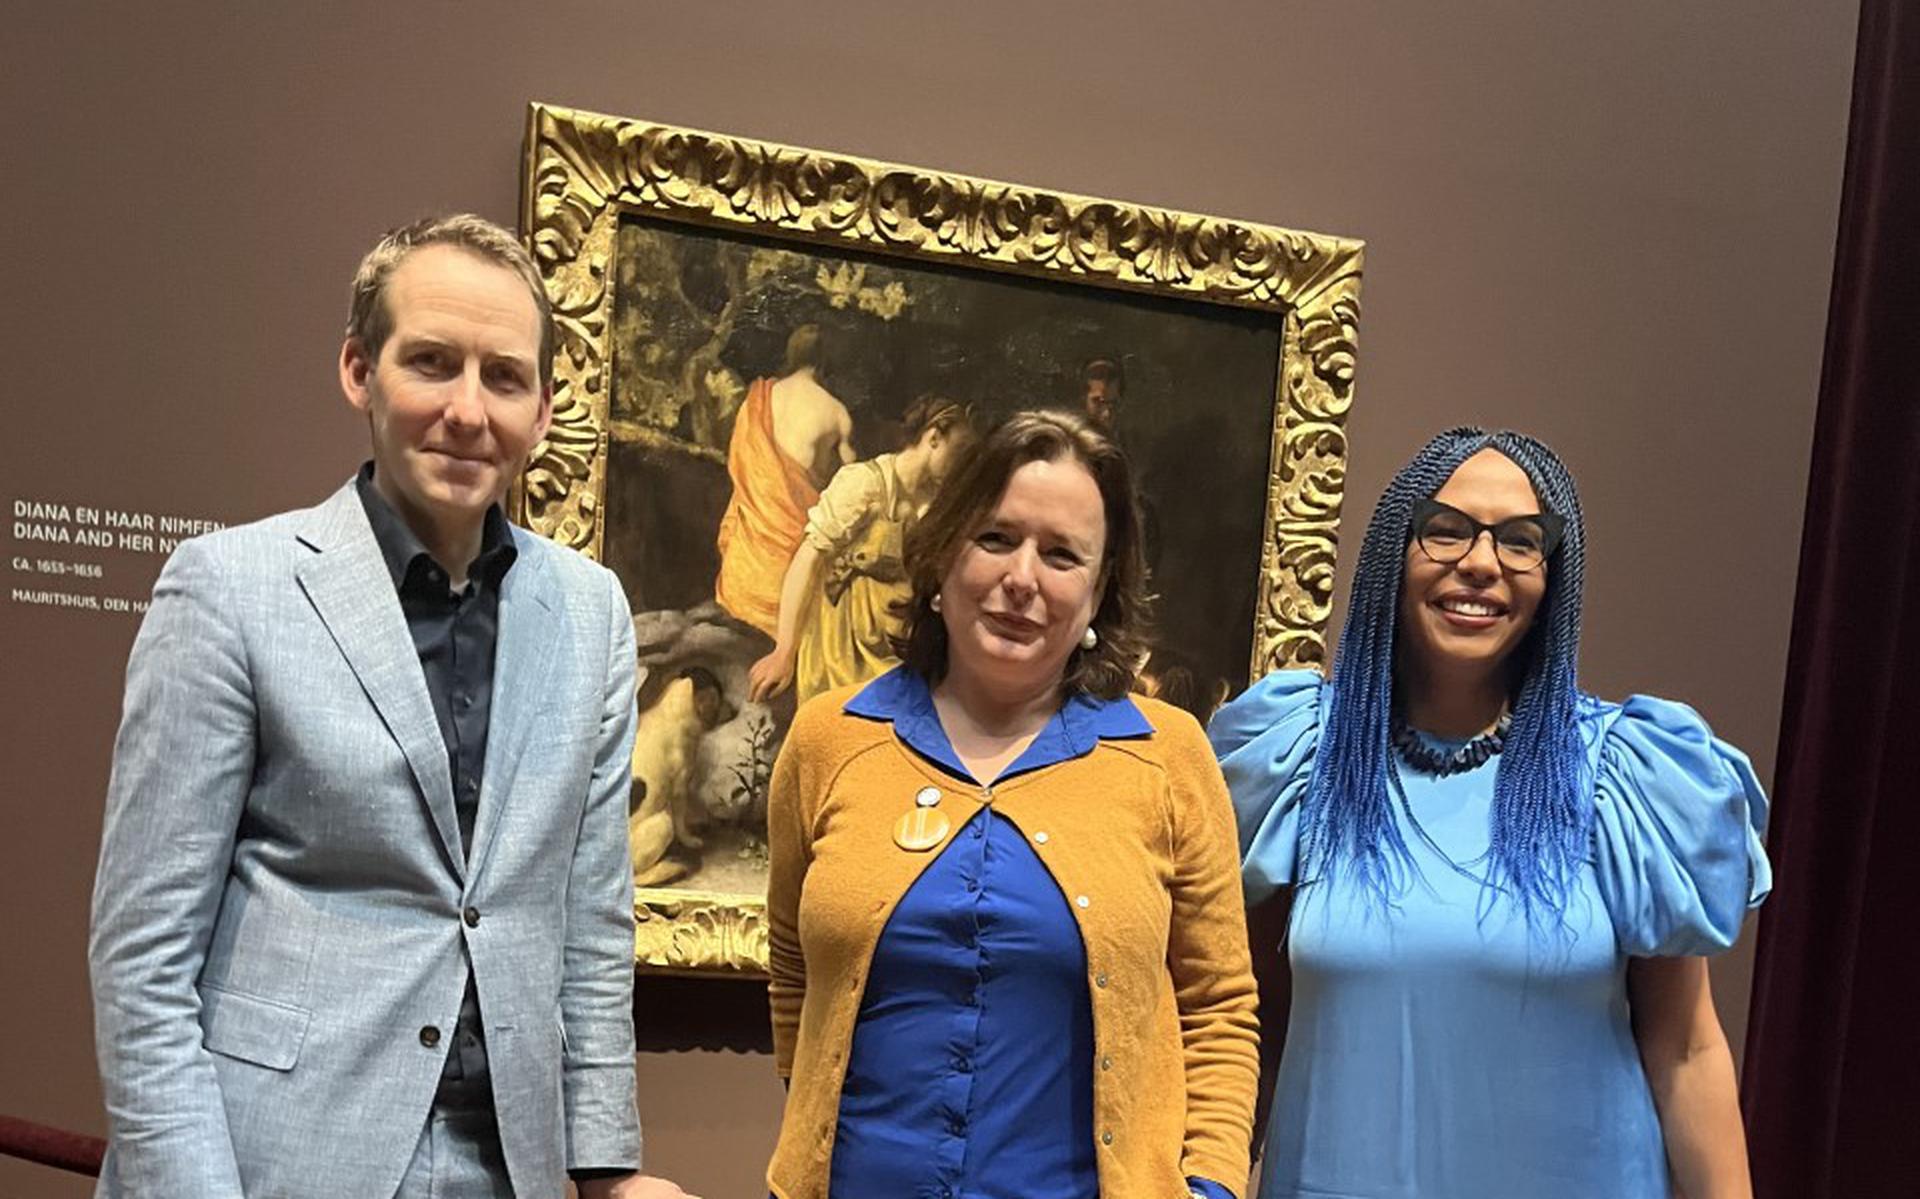 Carolien van Olphen met Pieter Roelofs en Abbie Vandivere bij de opening van de Vermeer expositie in het Rijksmuseum. 